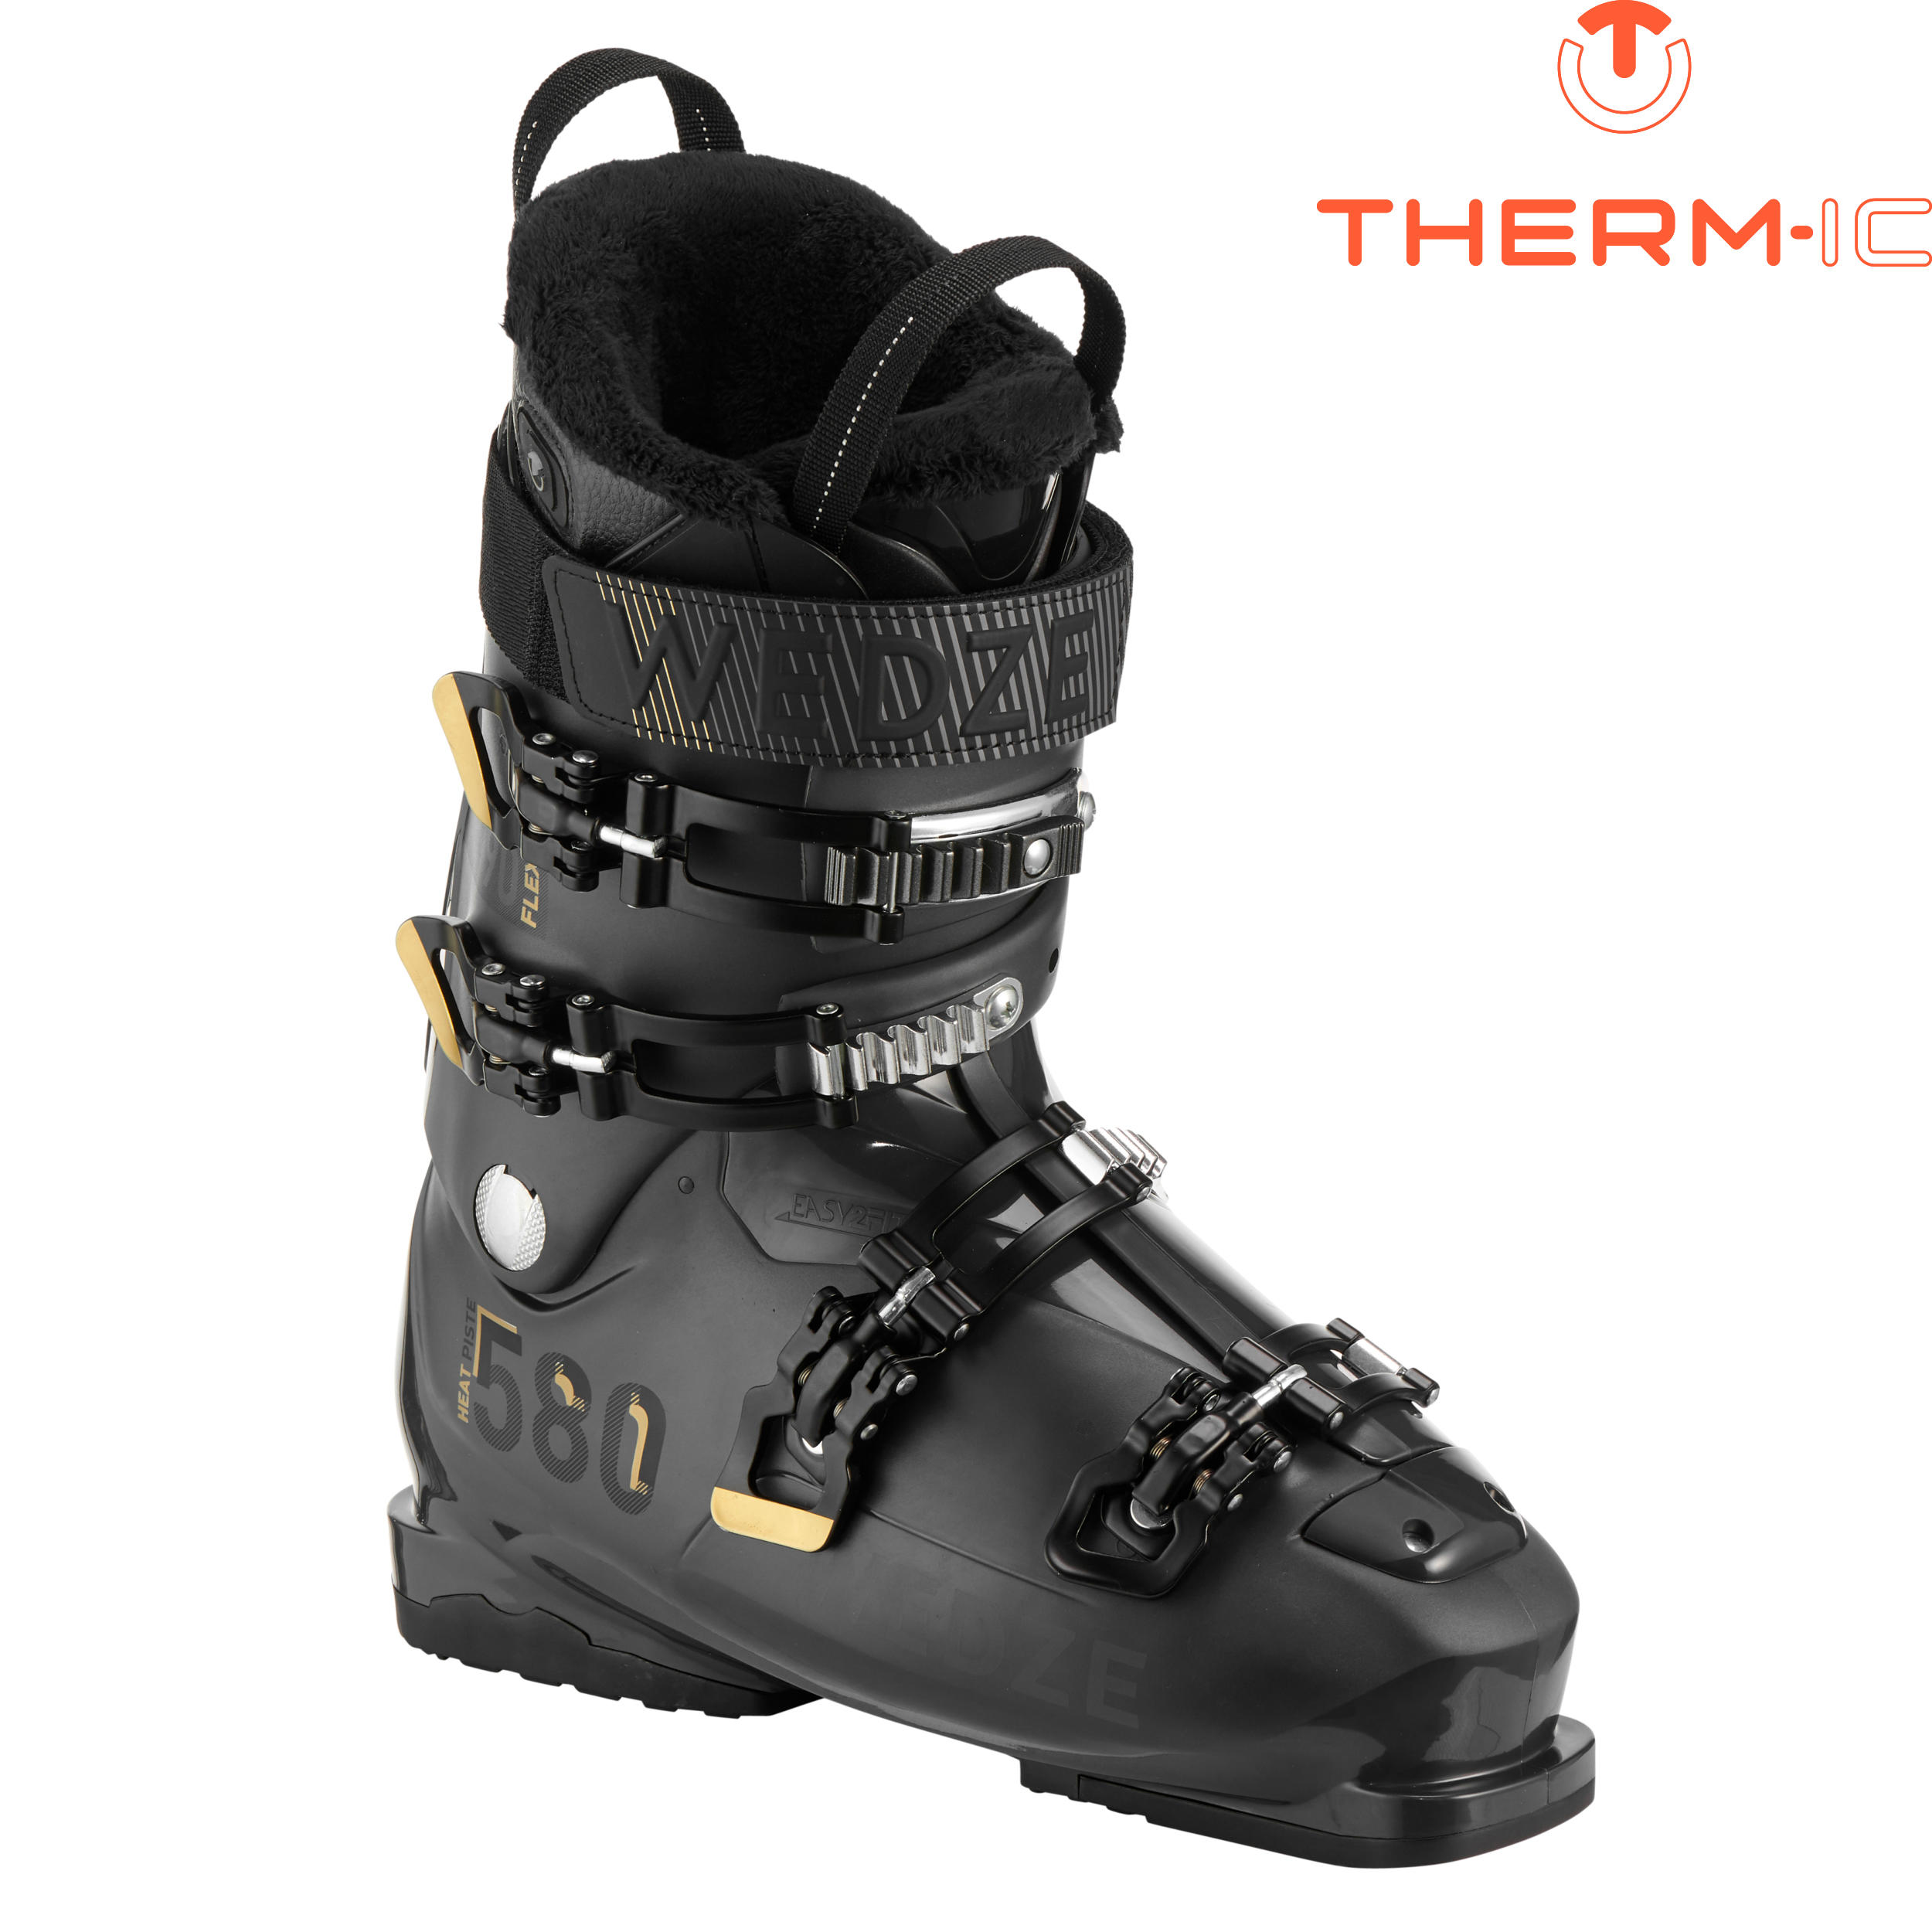 M Downhill Ski Boots Heat - Black 2/16